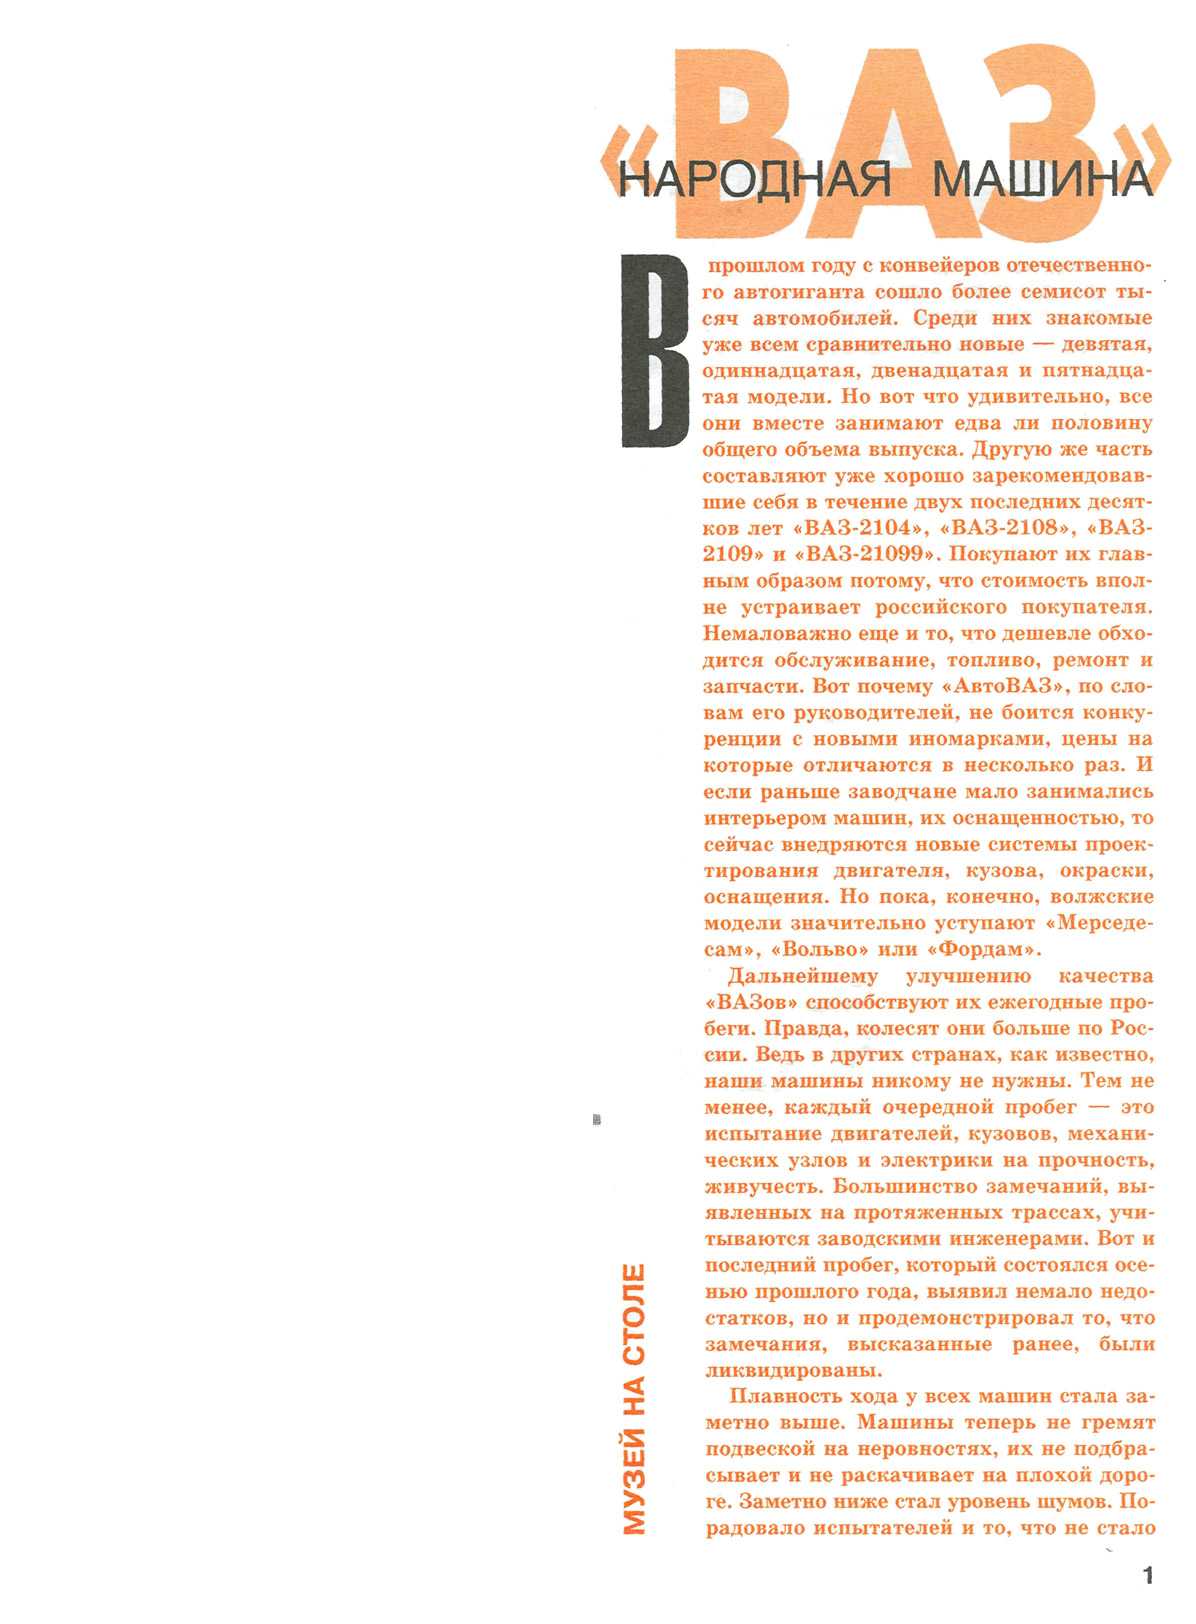 "Левша" 4, 2003, 1 c.